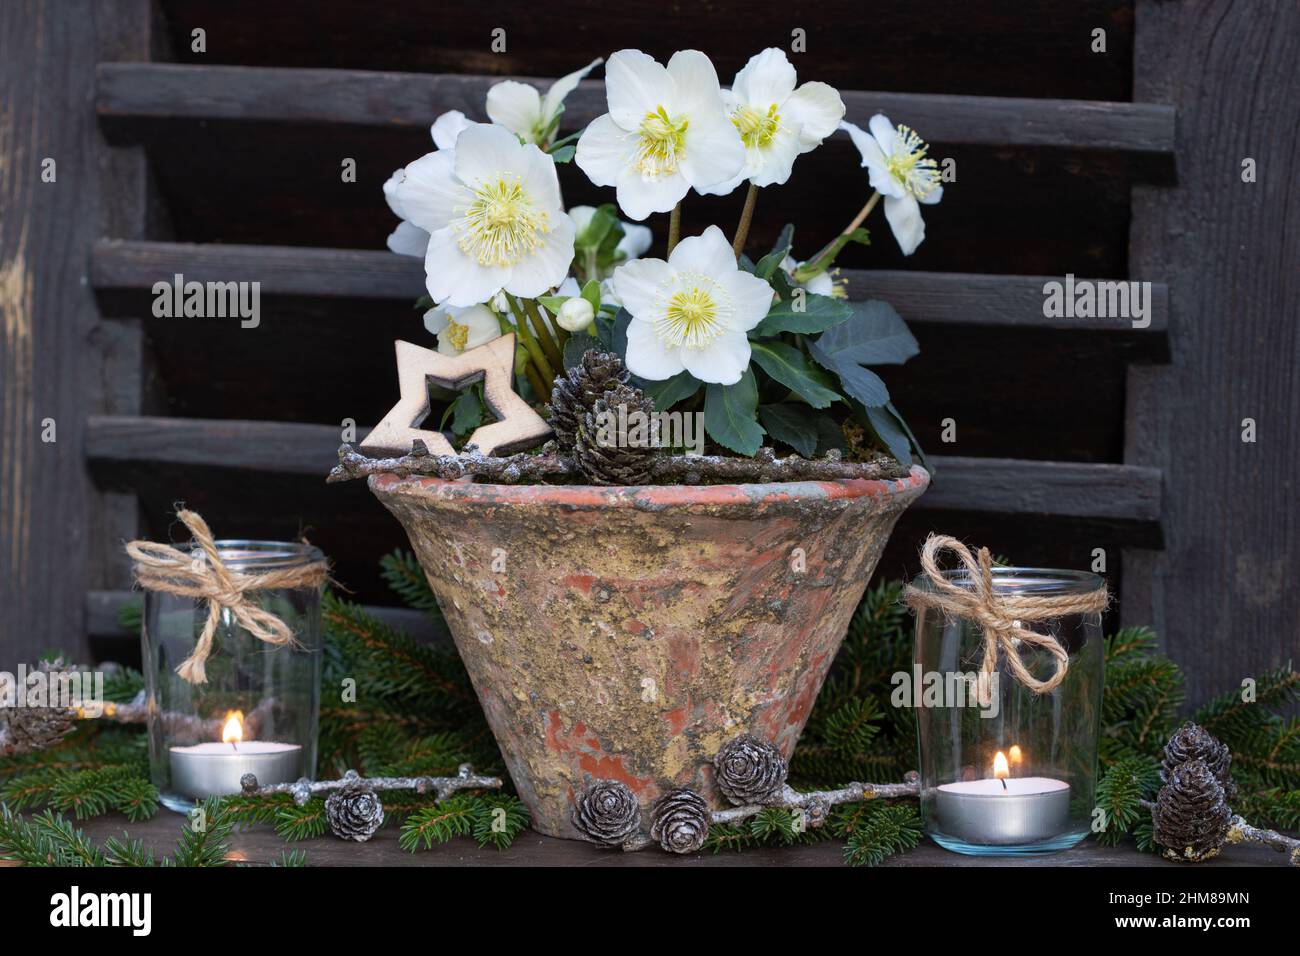 helleborus niger in vaso d'epoca e lanterne da tavola in vetro come decorazione invernale Foto Stock